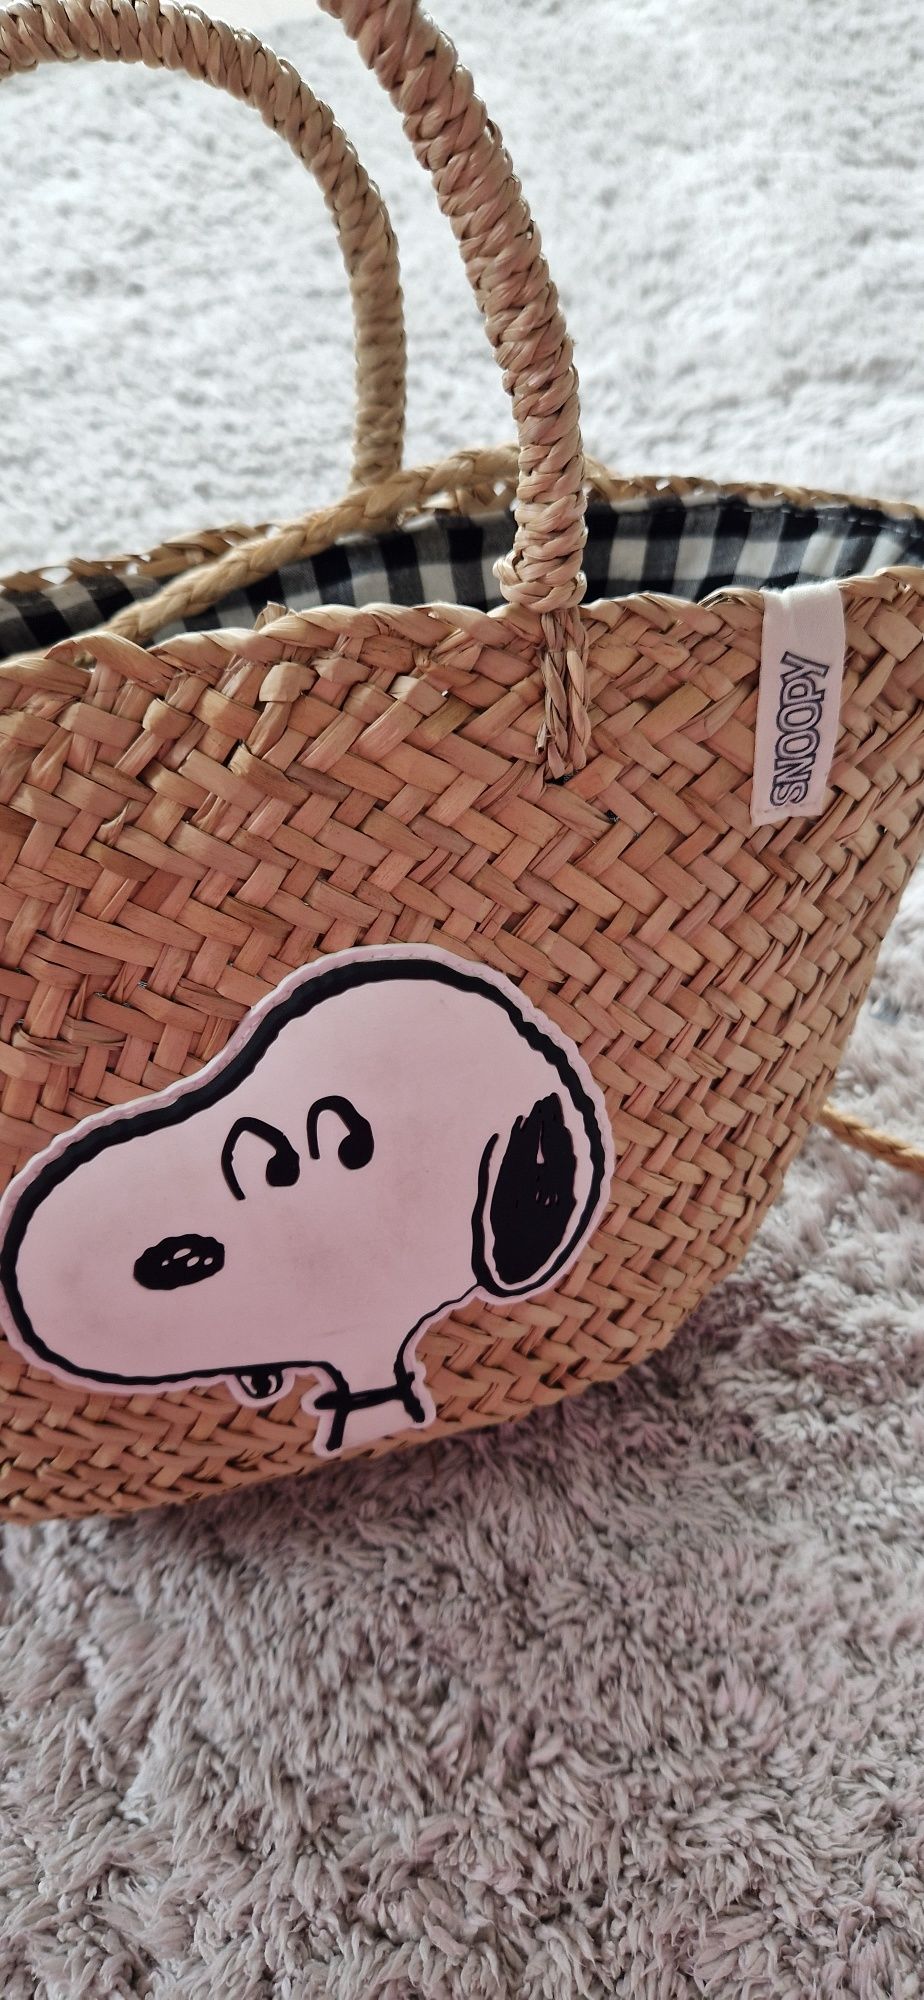 Koszyk Zara Snoopy